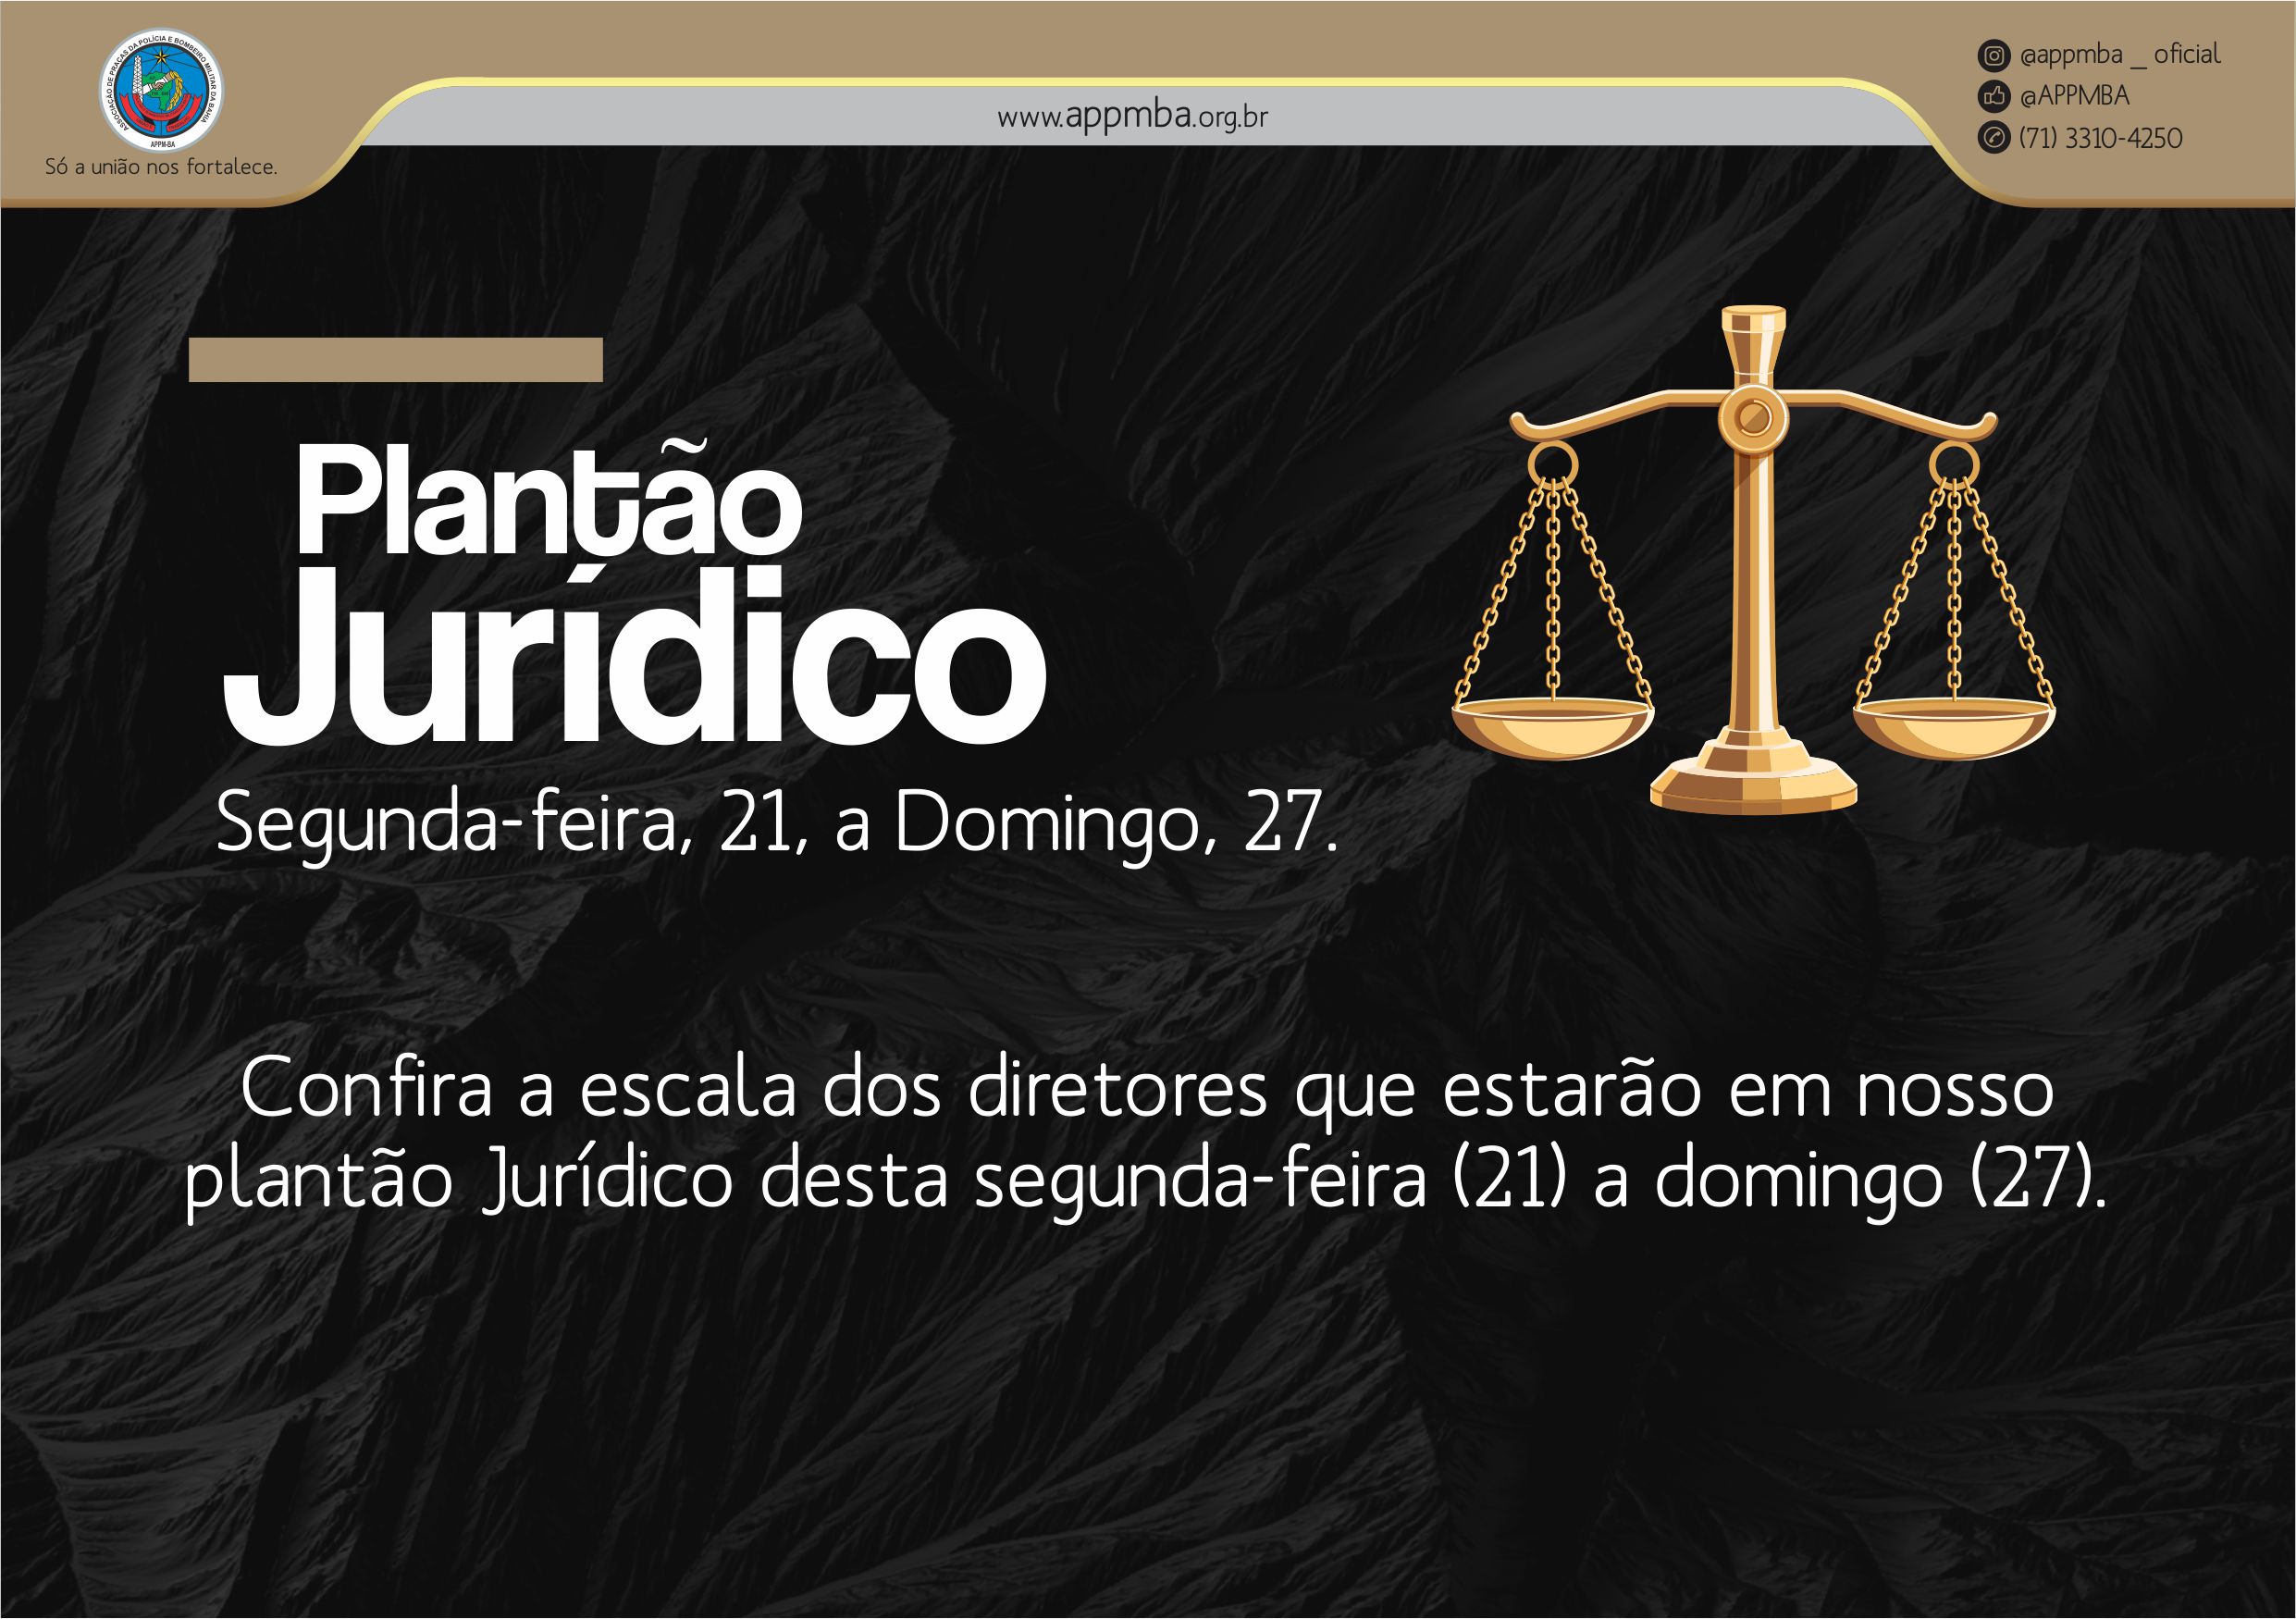 Plantão Jurídico APPM-BA, dias 21 à 27/10/2019